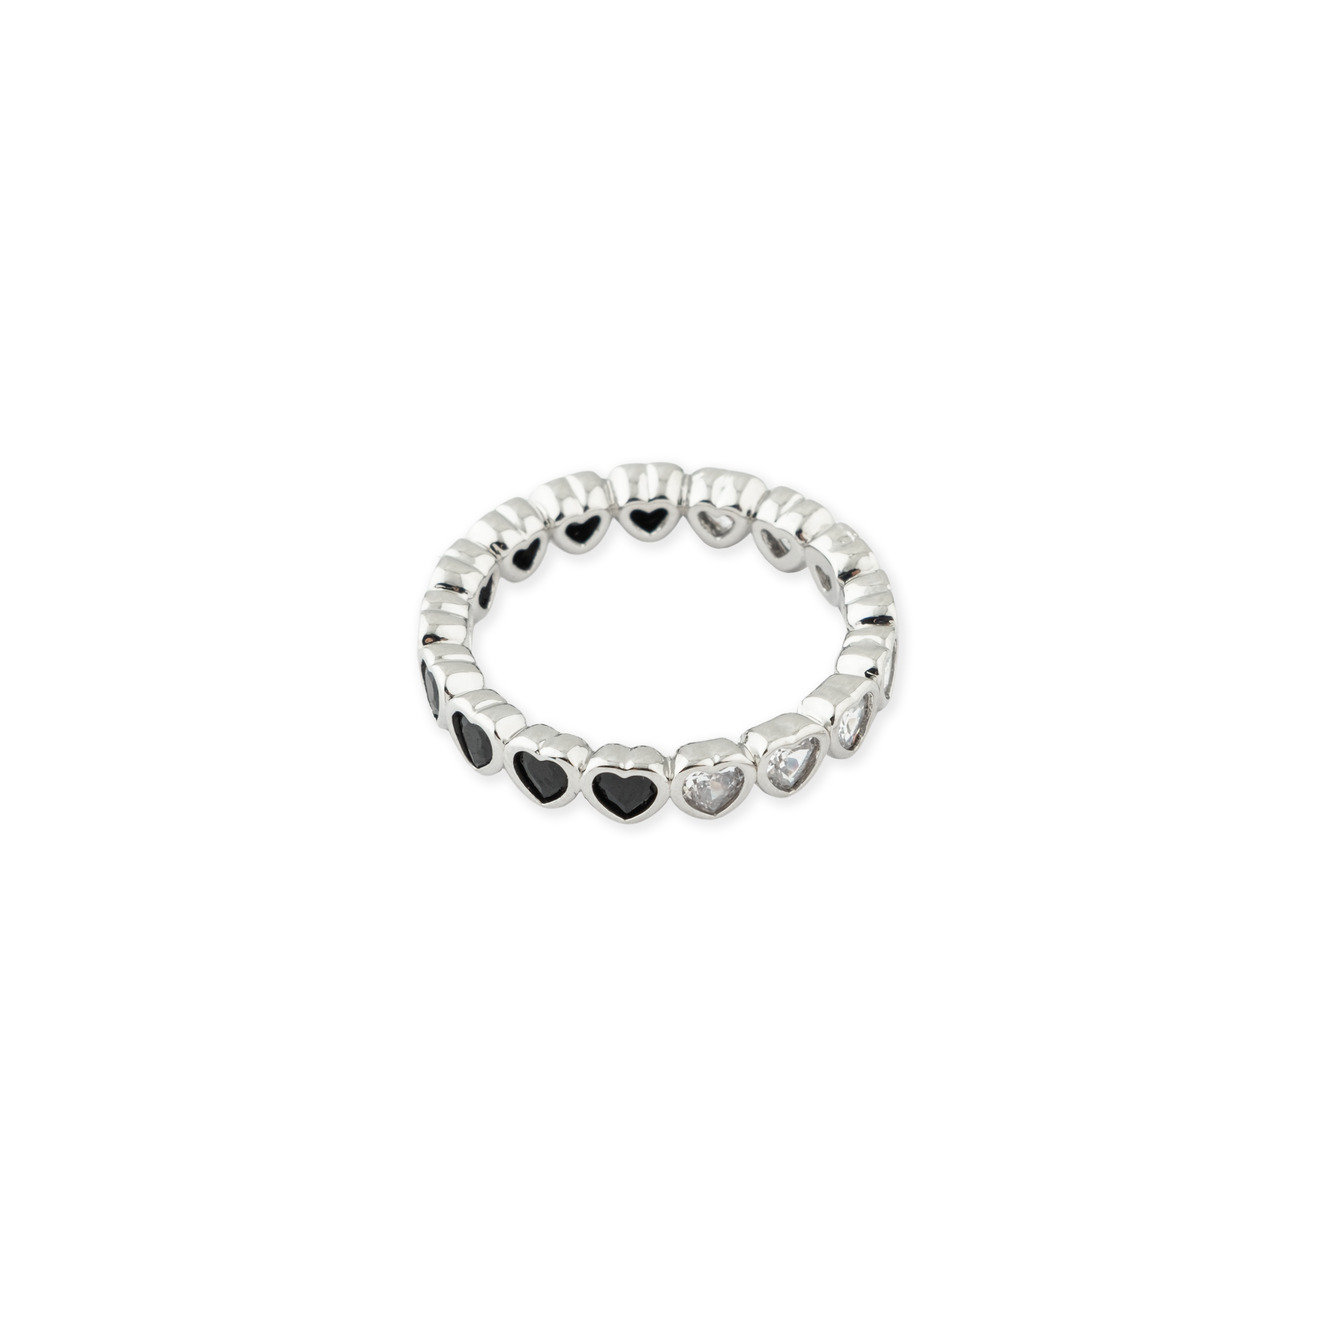 Herald Percy Серебристое кольцо из сердец с белыми и черными кристаллами